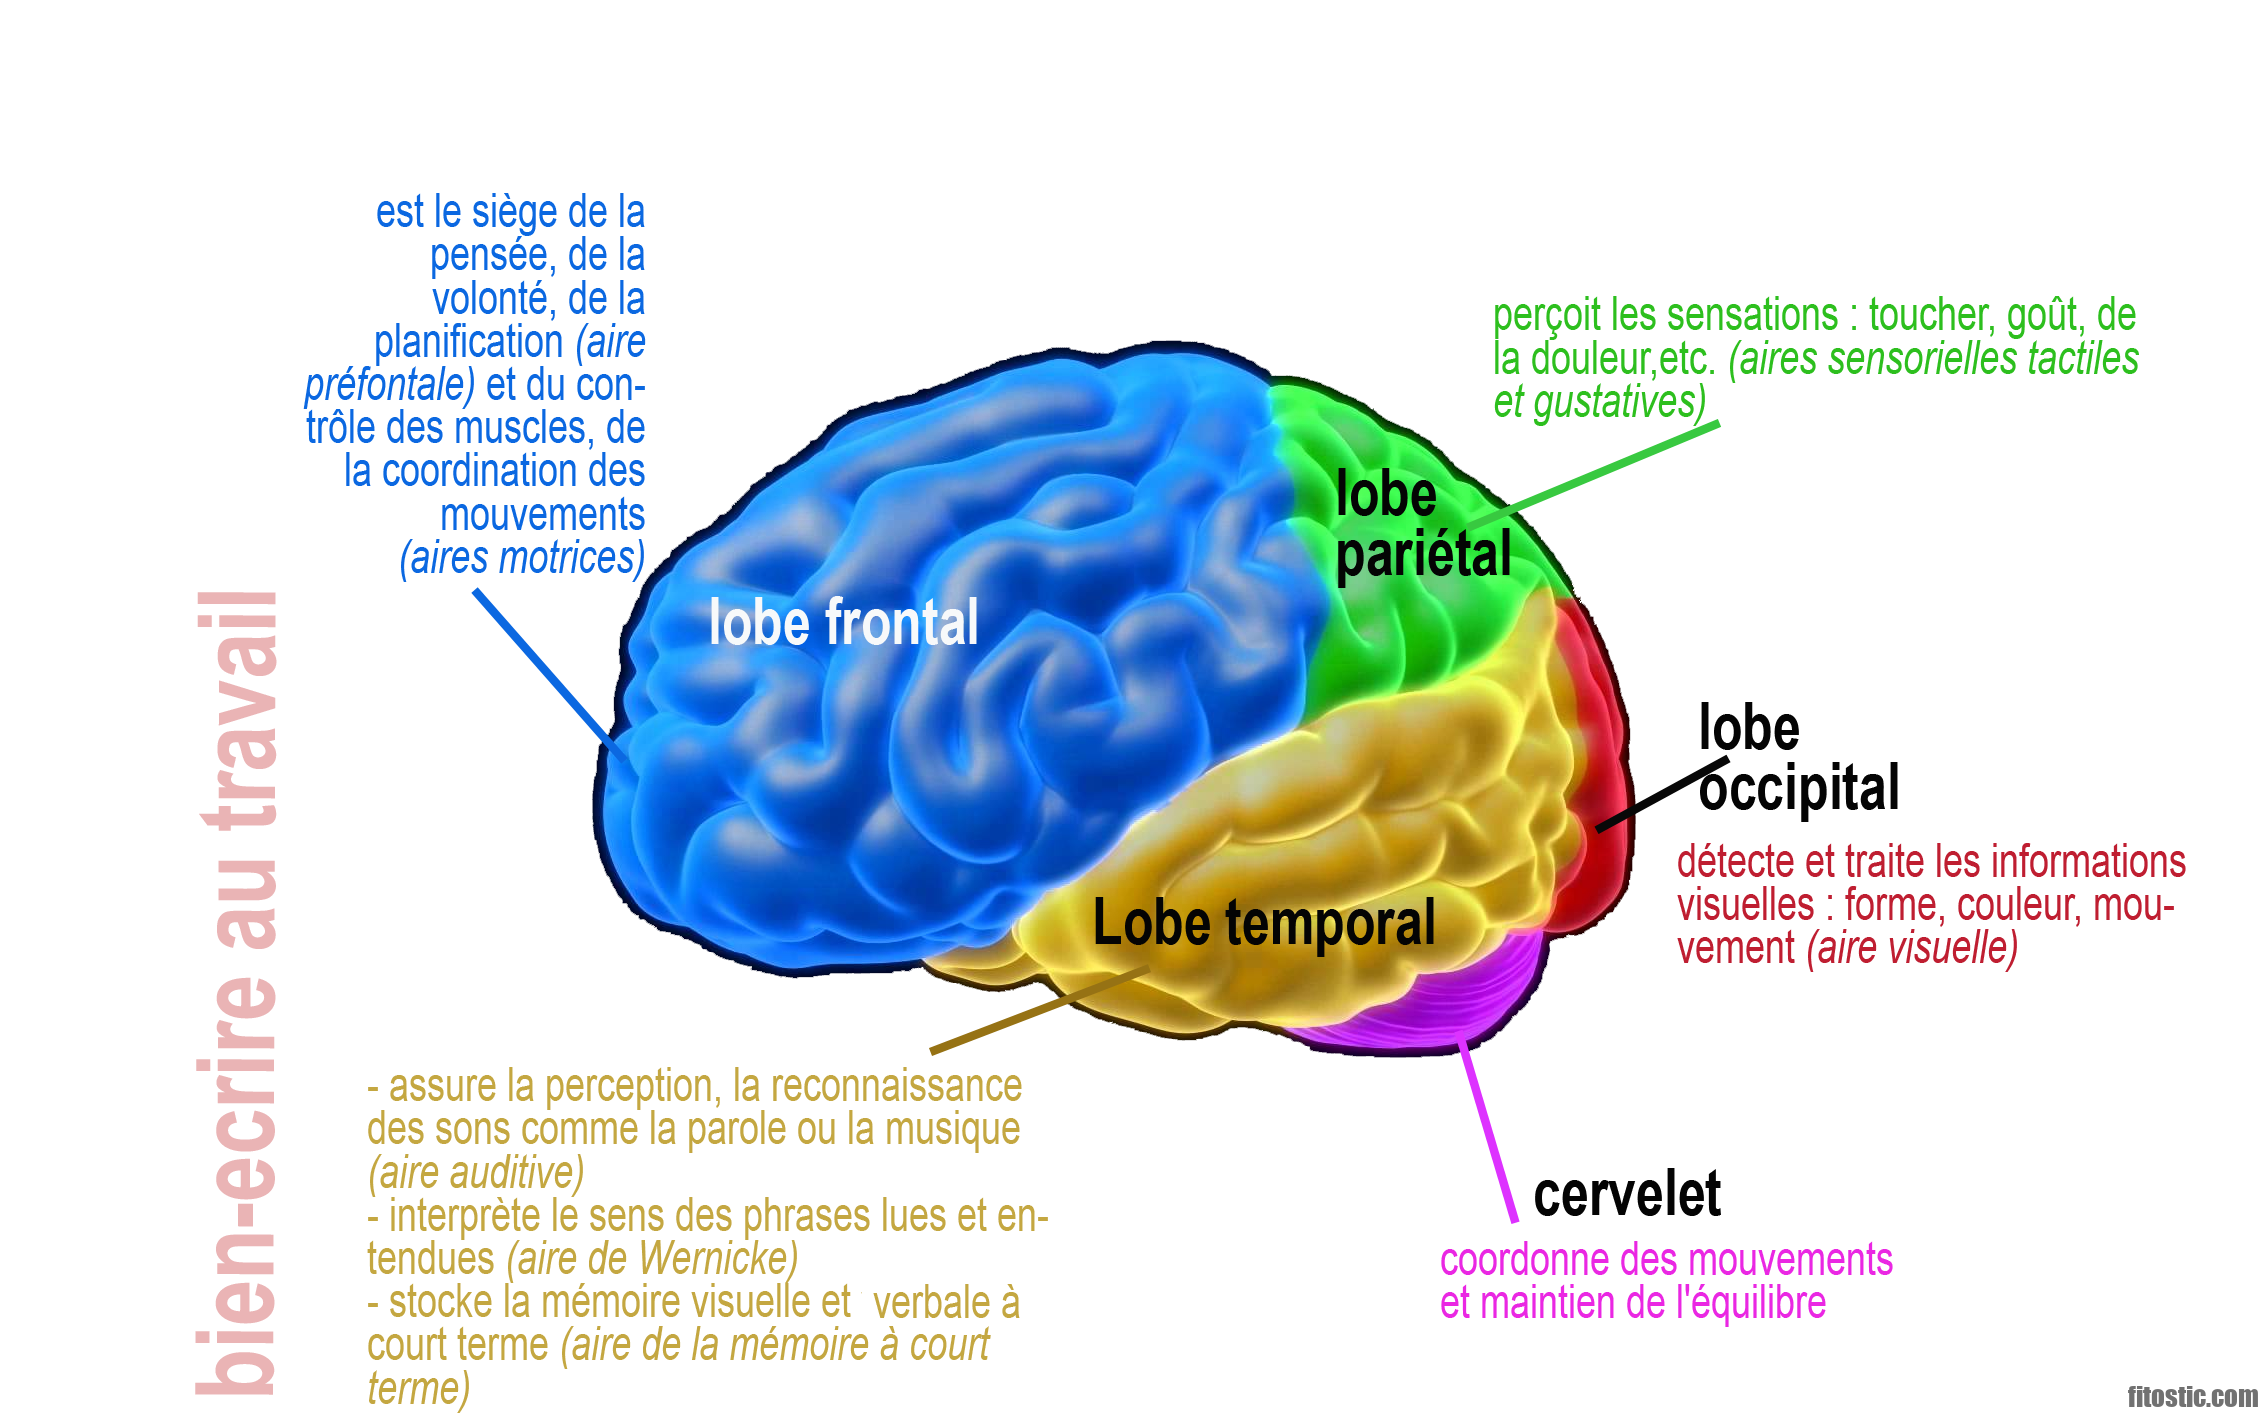 Quelle partie du cerveau contrôle quoi ?